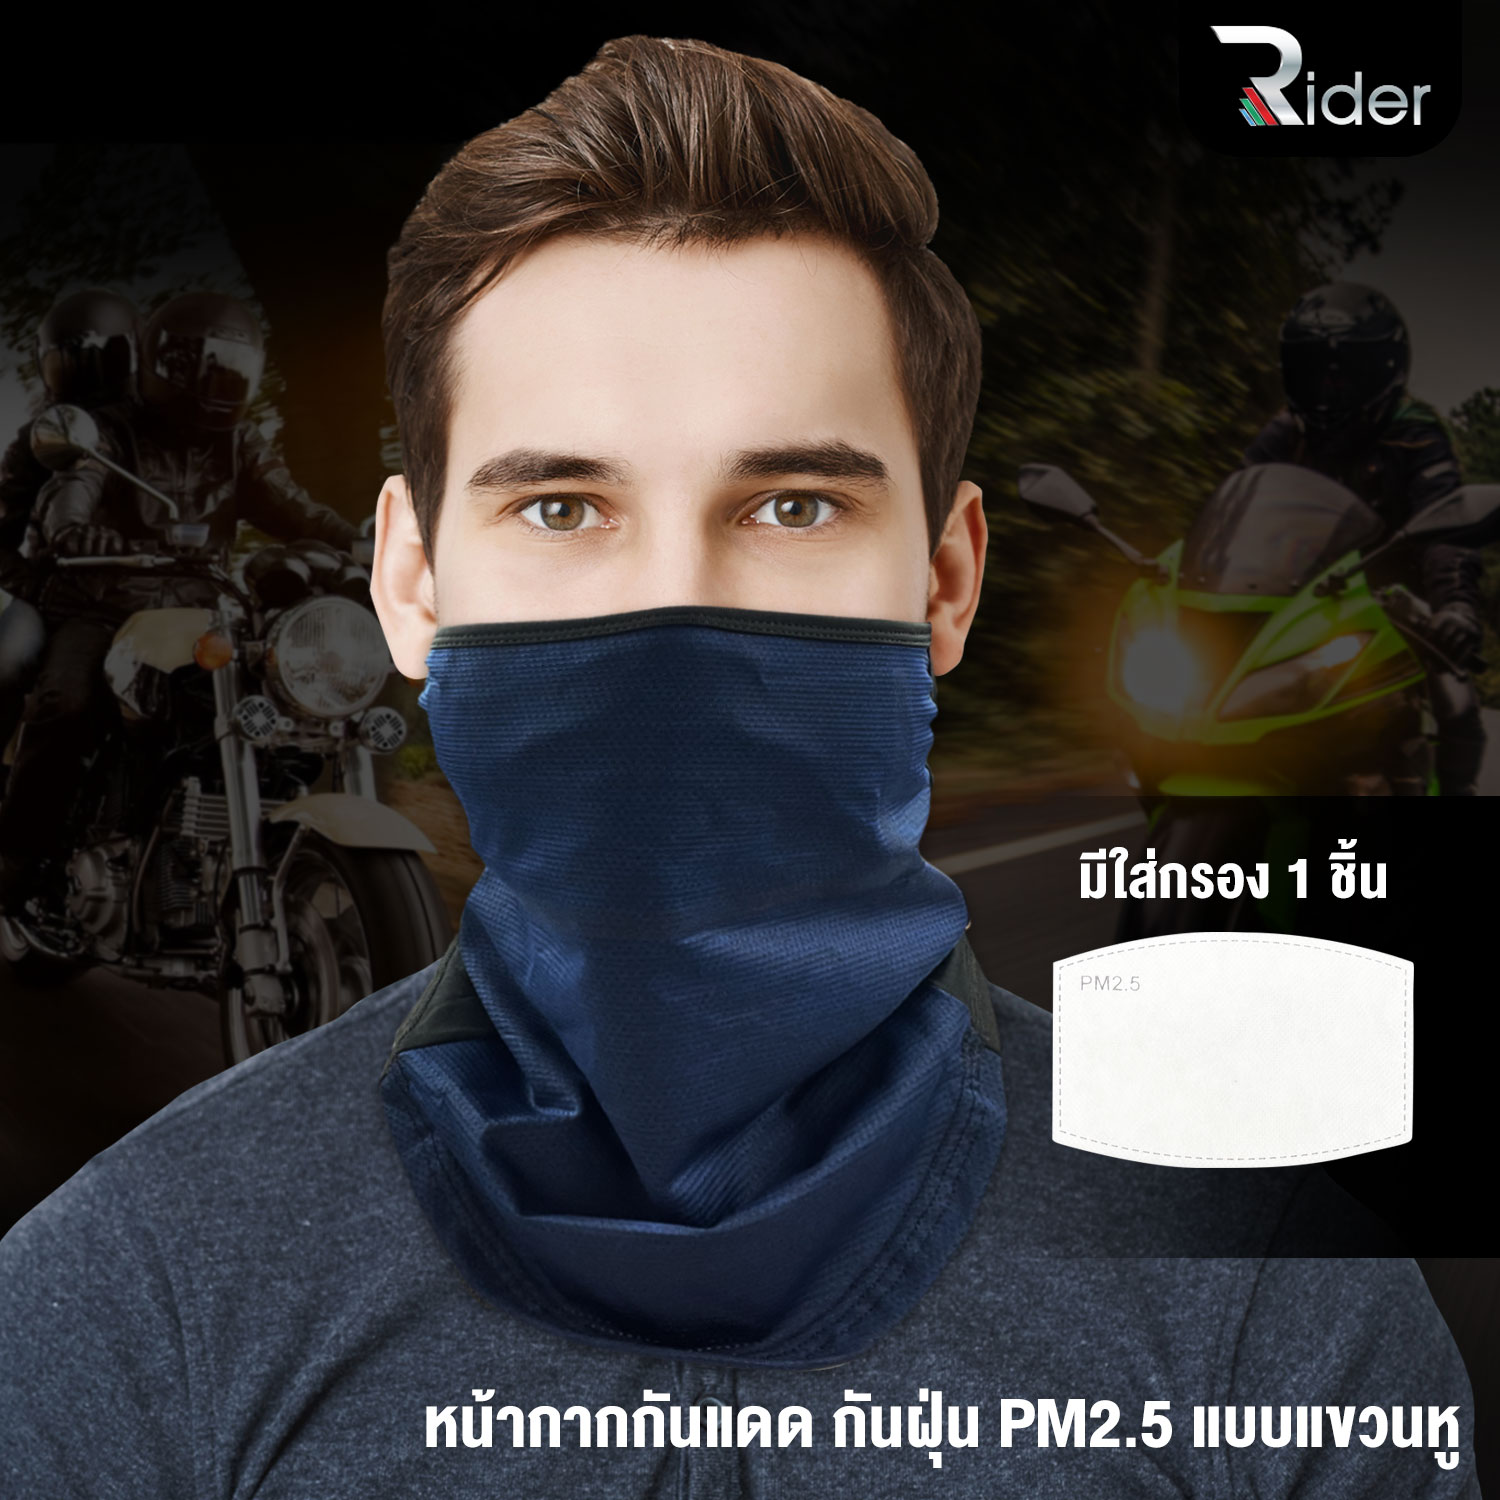 The Rider หน้ากากกันฝุ่น PM2.5 กันแดด แบบแขวนหู อเนกประสงค์ เนื้อผ้านุ่ม แถม แผ่นกรองฝุ่น PM2.5 1 ชิ้น หน้ากาก สีน้ำเงิน